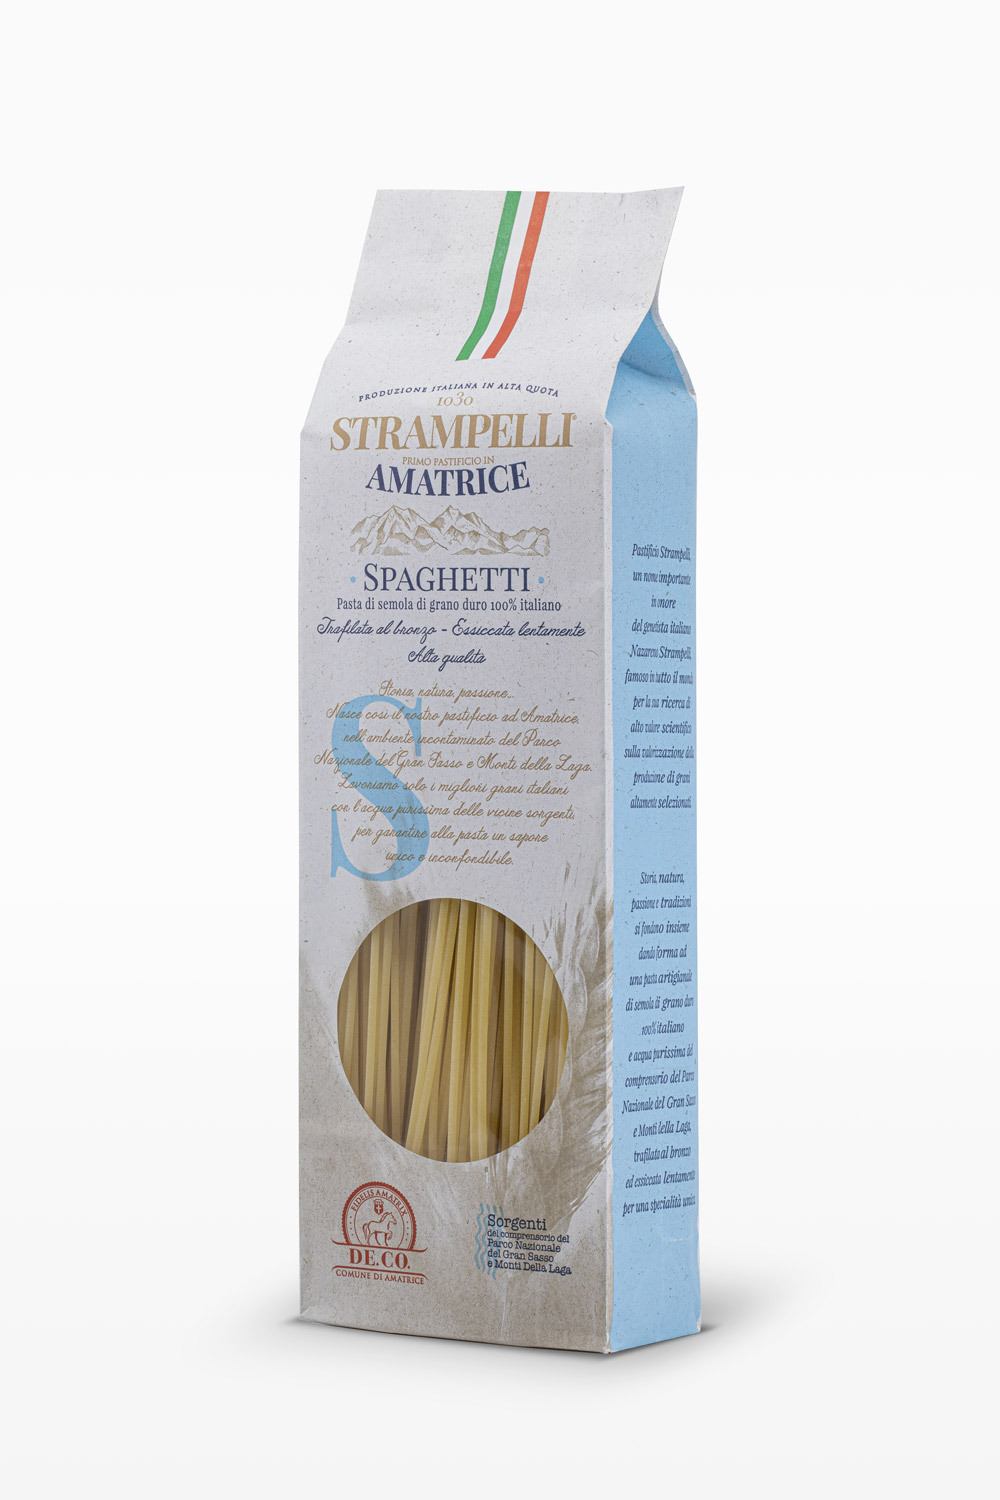 Spaghetti - Pasta di semola di grano duro, ruvida e porosa, grano 100% italiano, essiccazione lenta a bassa temperatura.